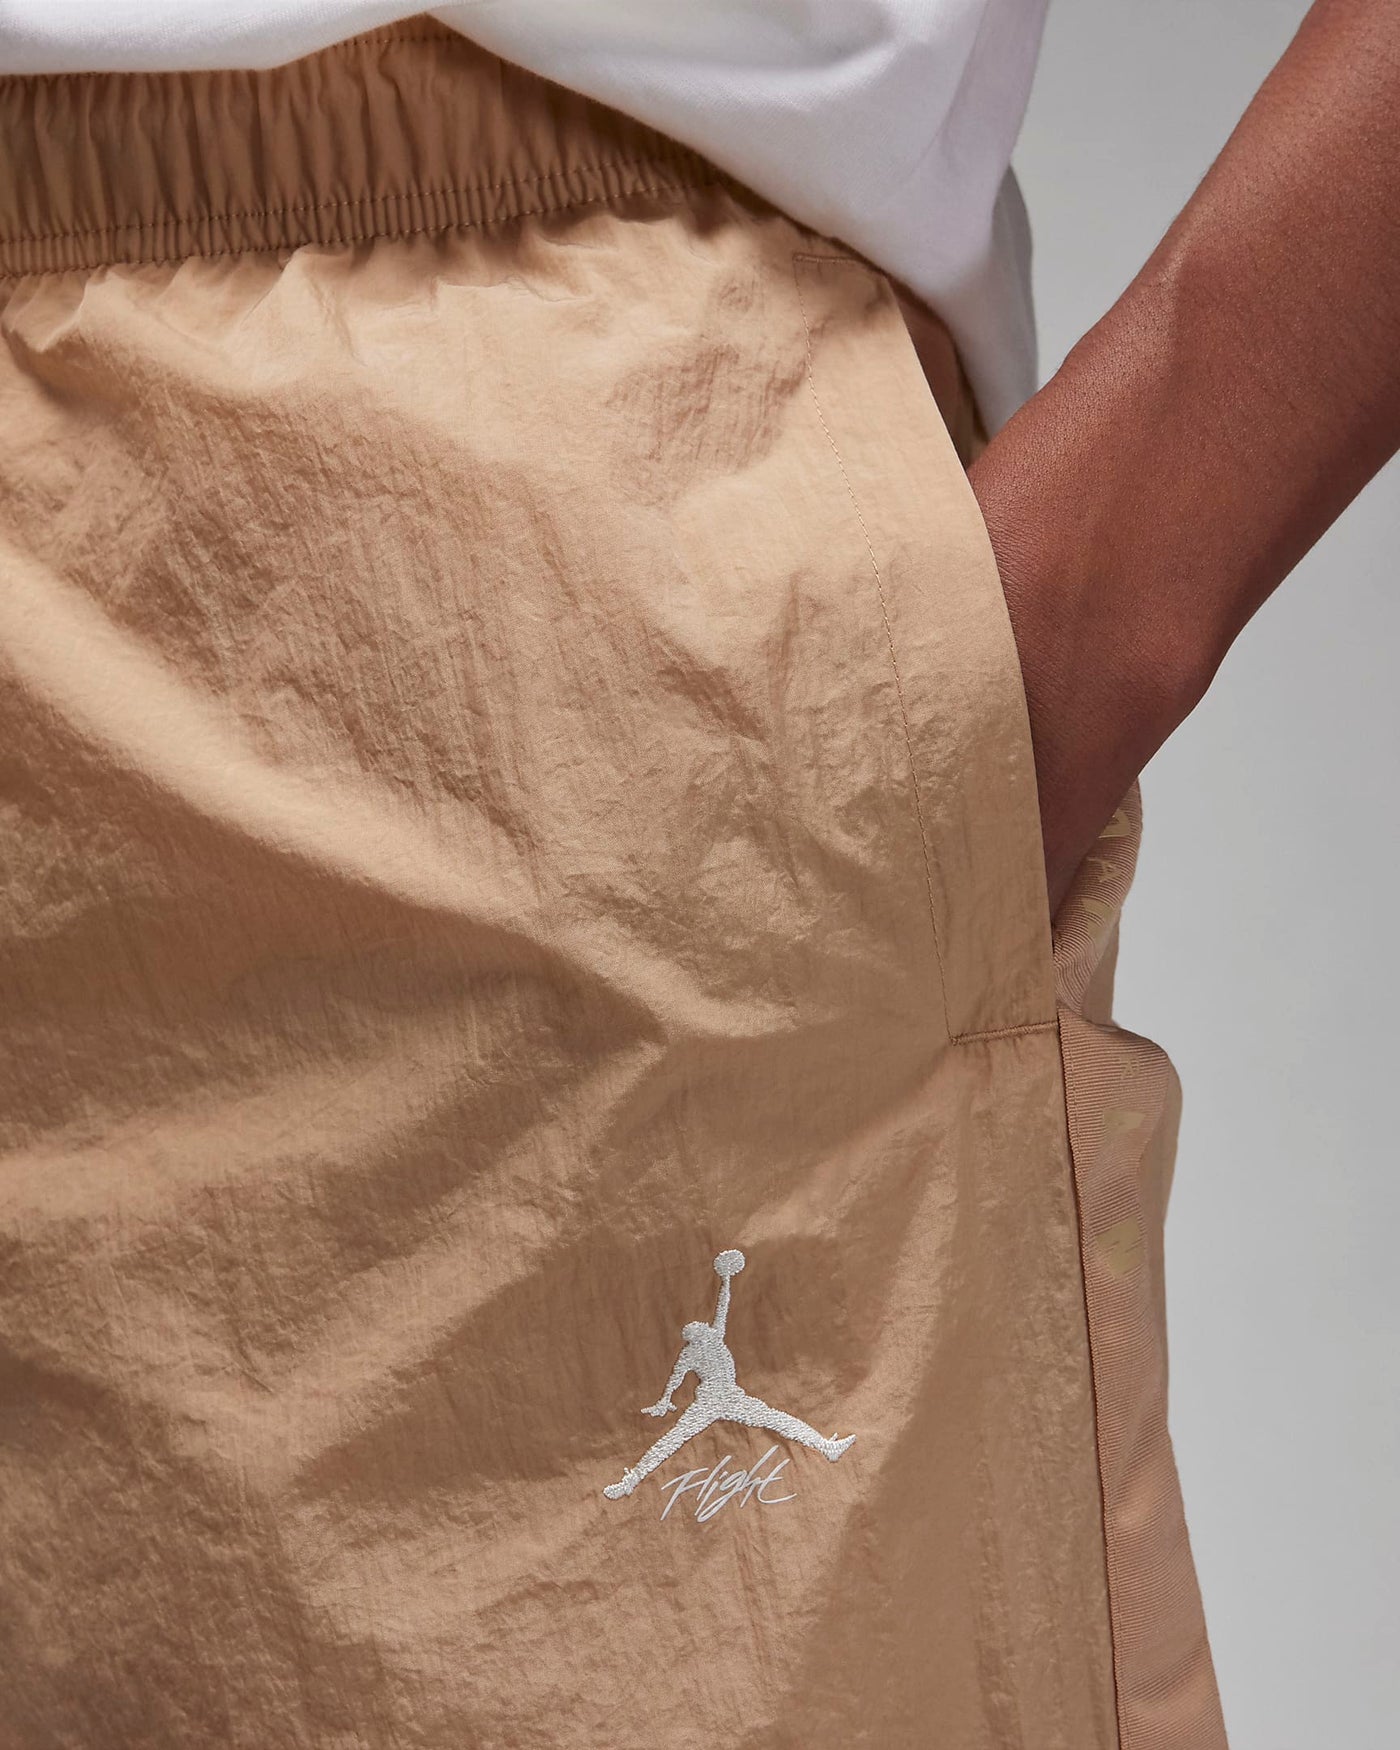 Jordan Essentials Men's Warmup Pants